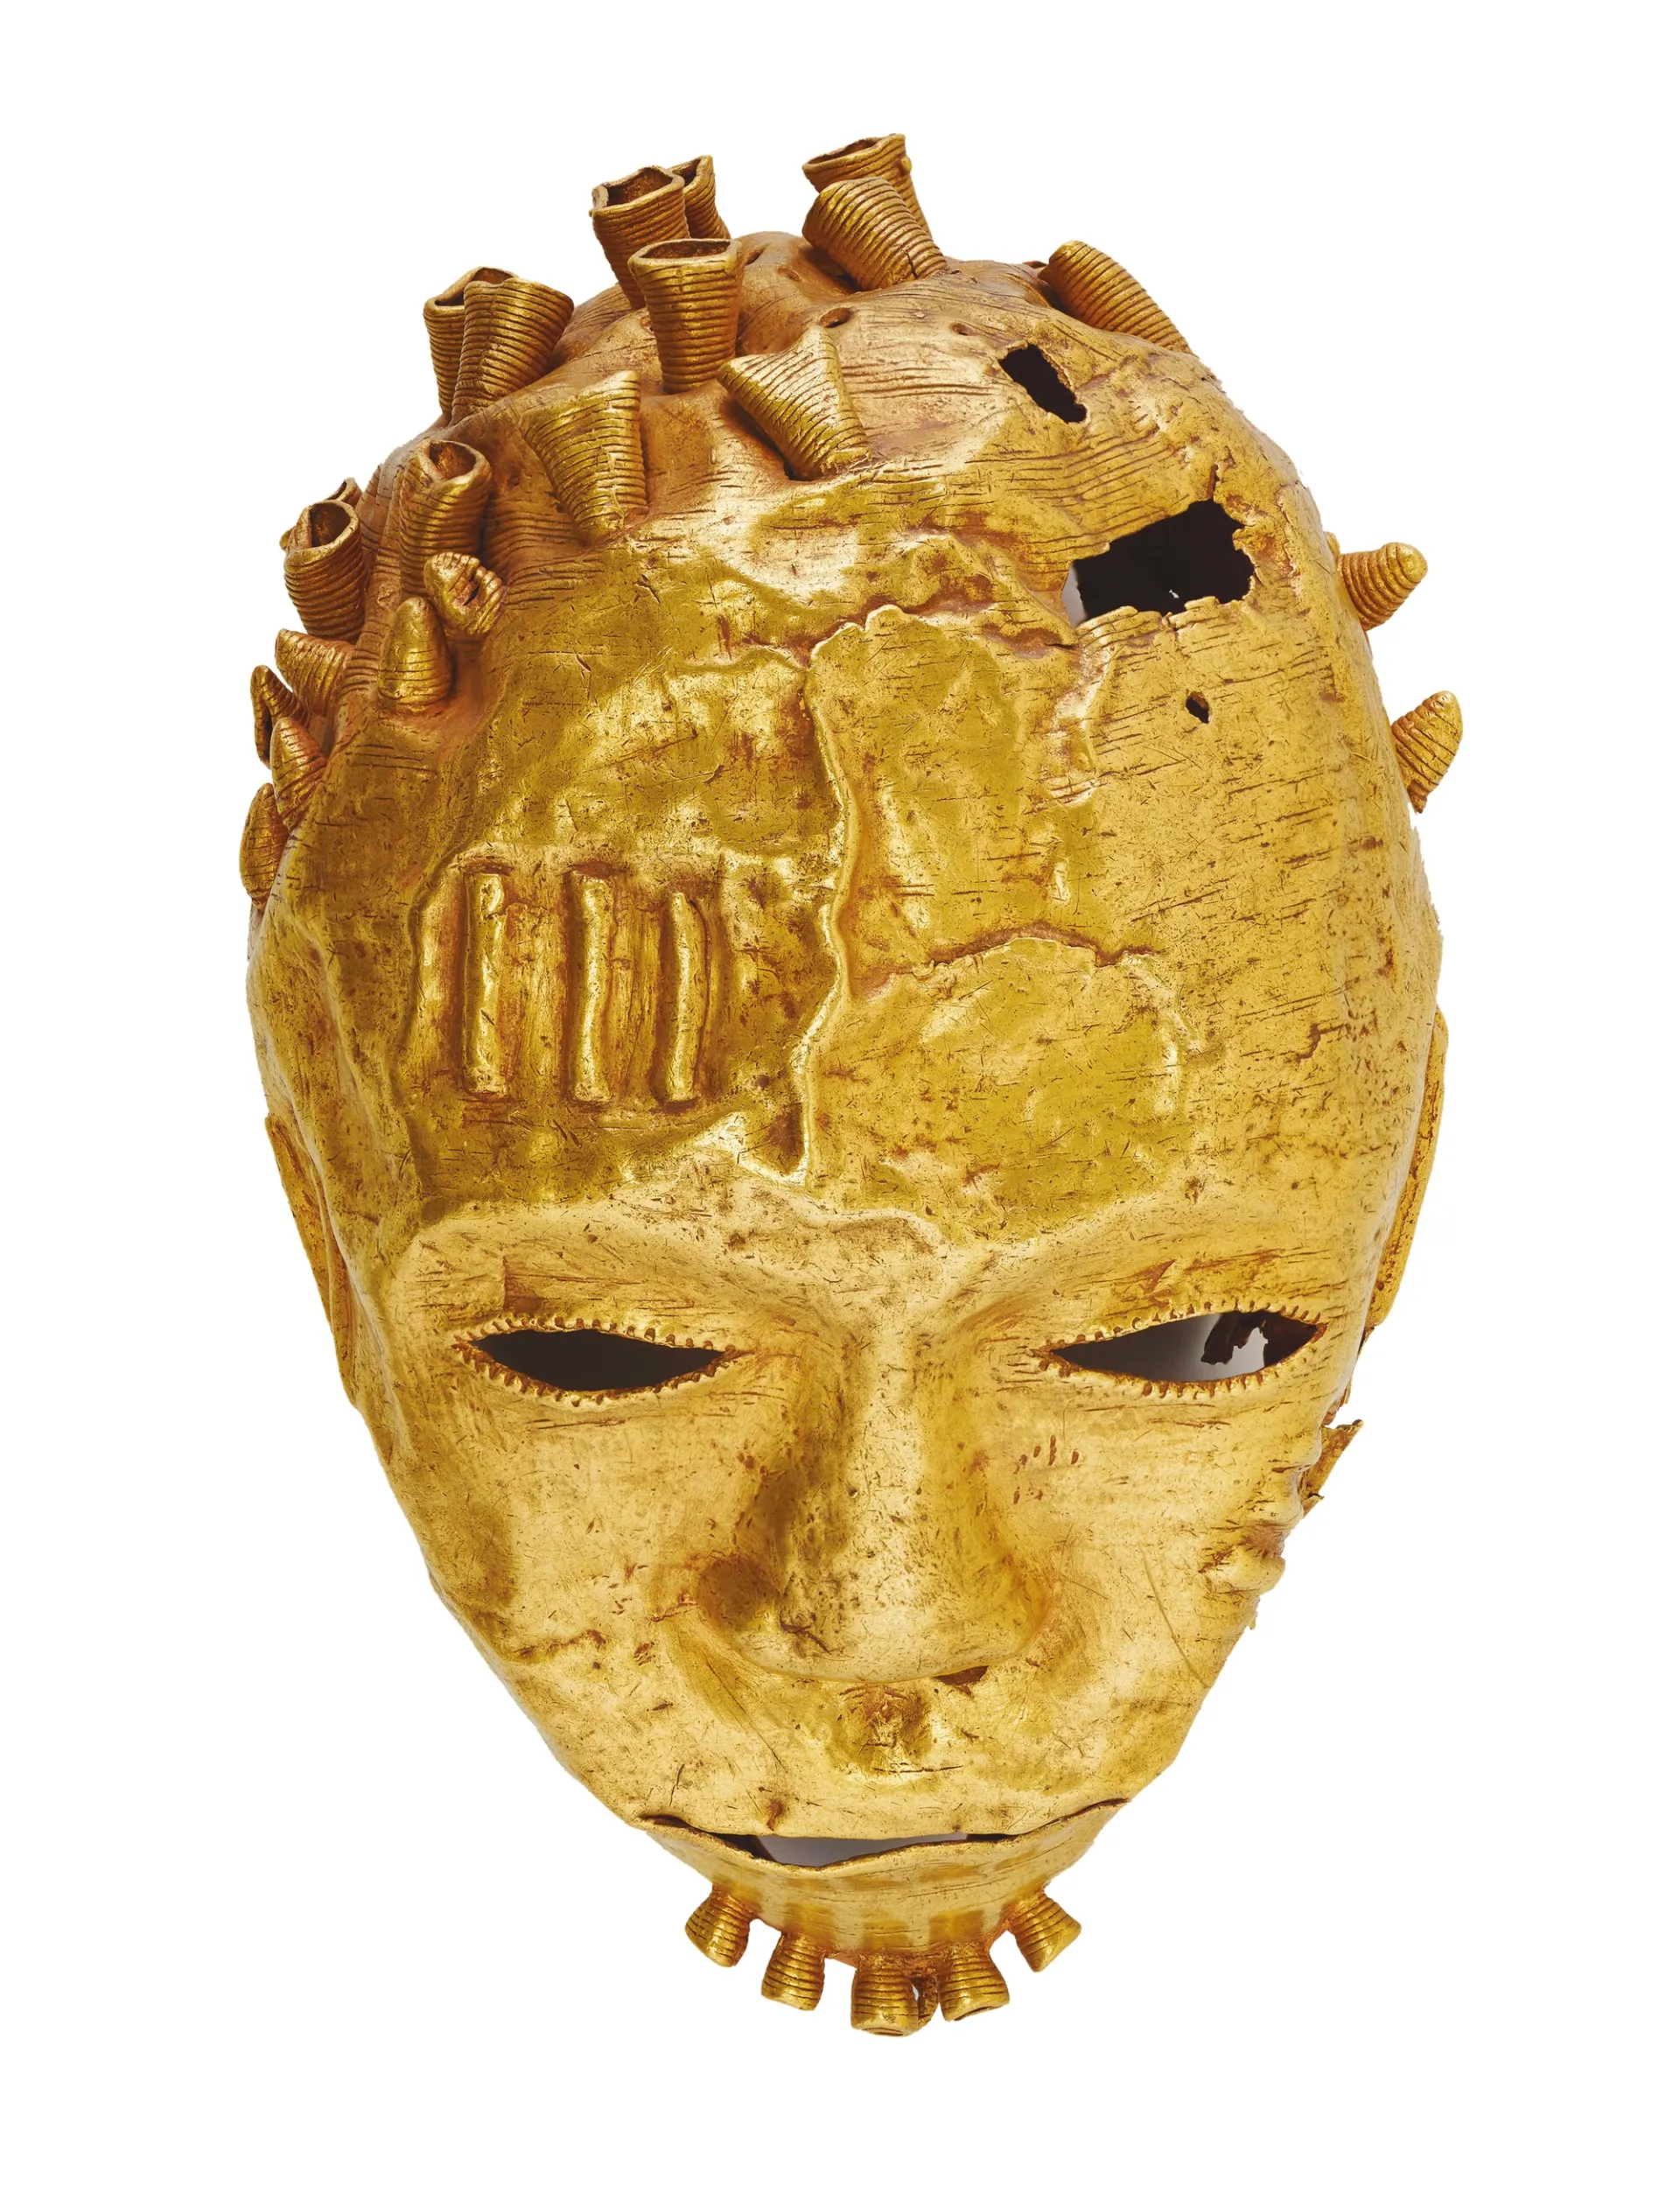 Χρυσή κεφαλή τροπαίου Ασάντε (19ος αιώνας), που εκτίθεται στο κάστρο του Ουίνσδορ 